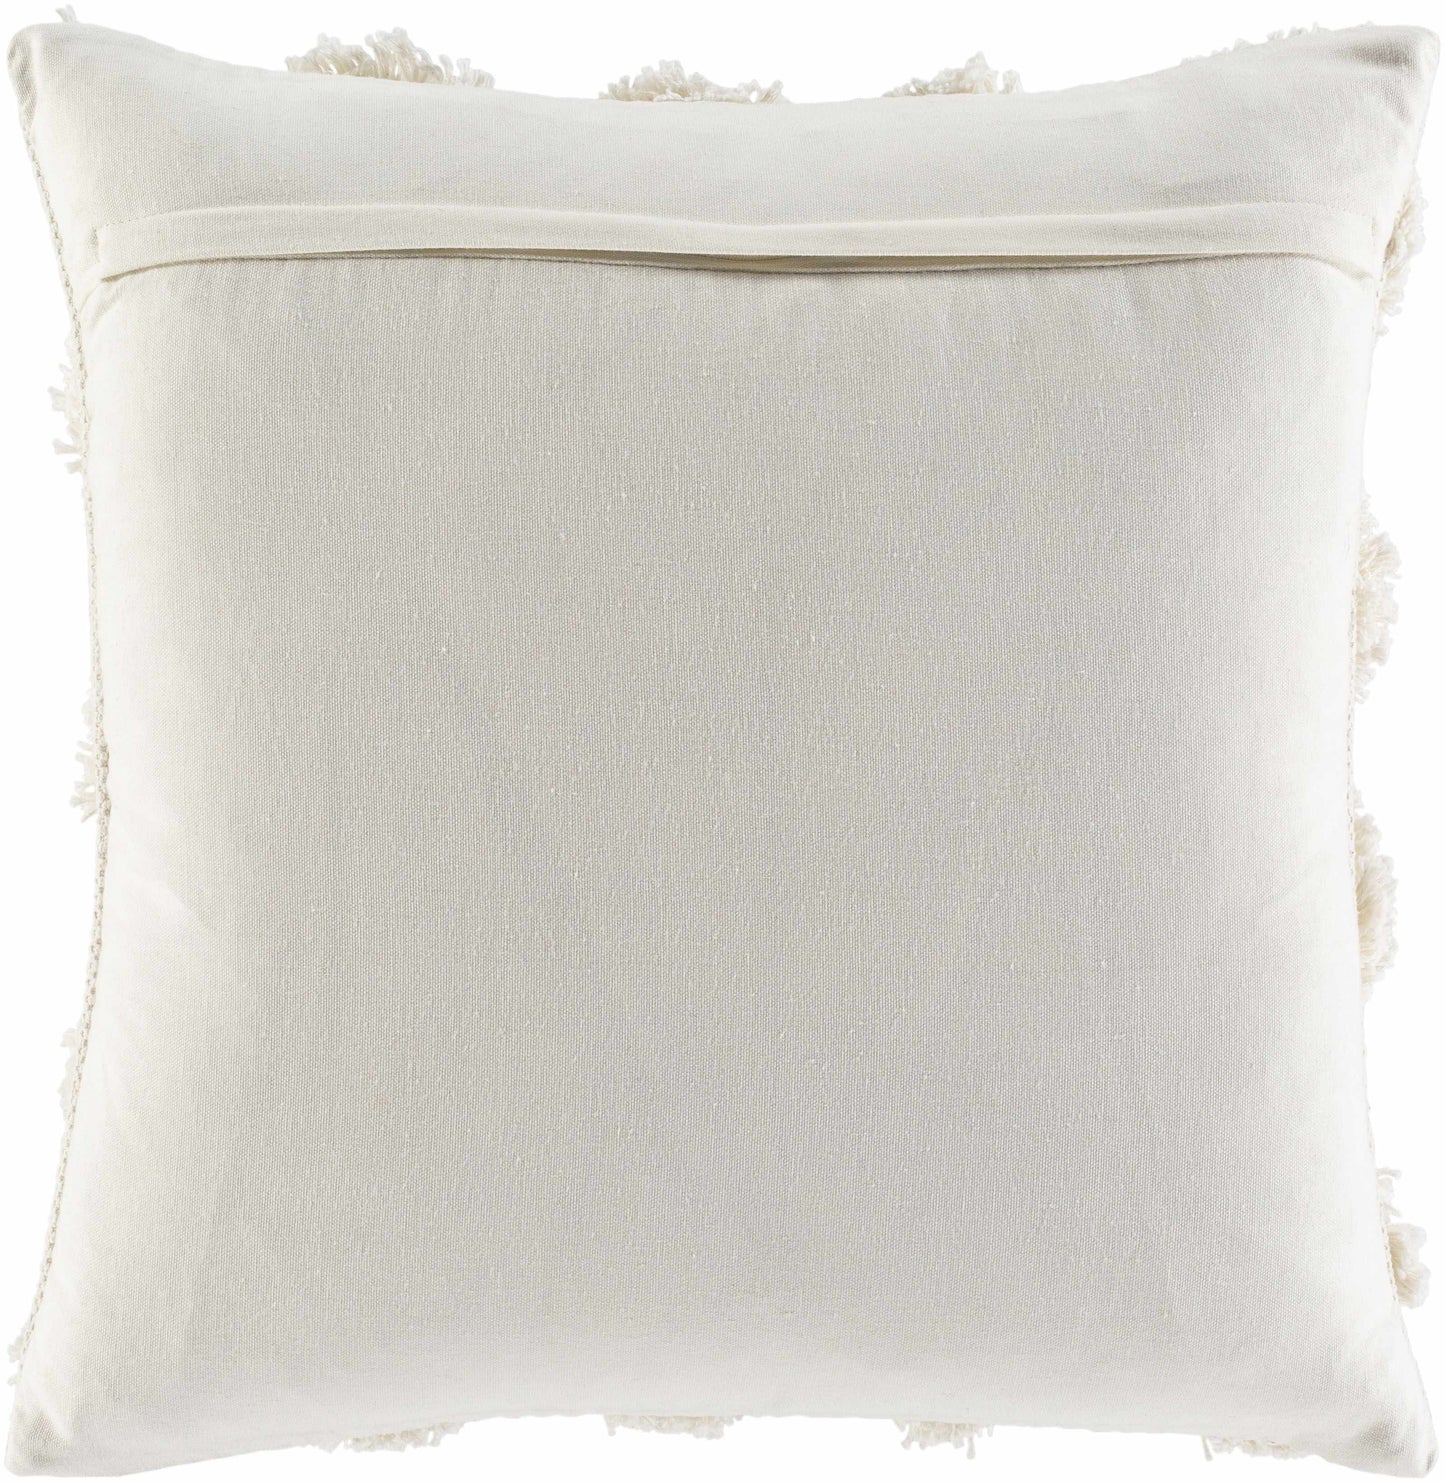 Zedelgem Ivory Pillow Cover